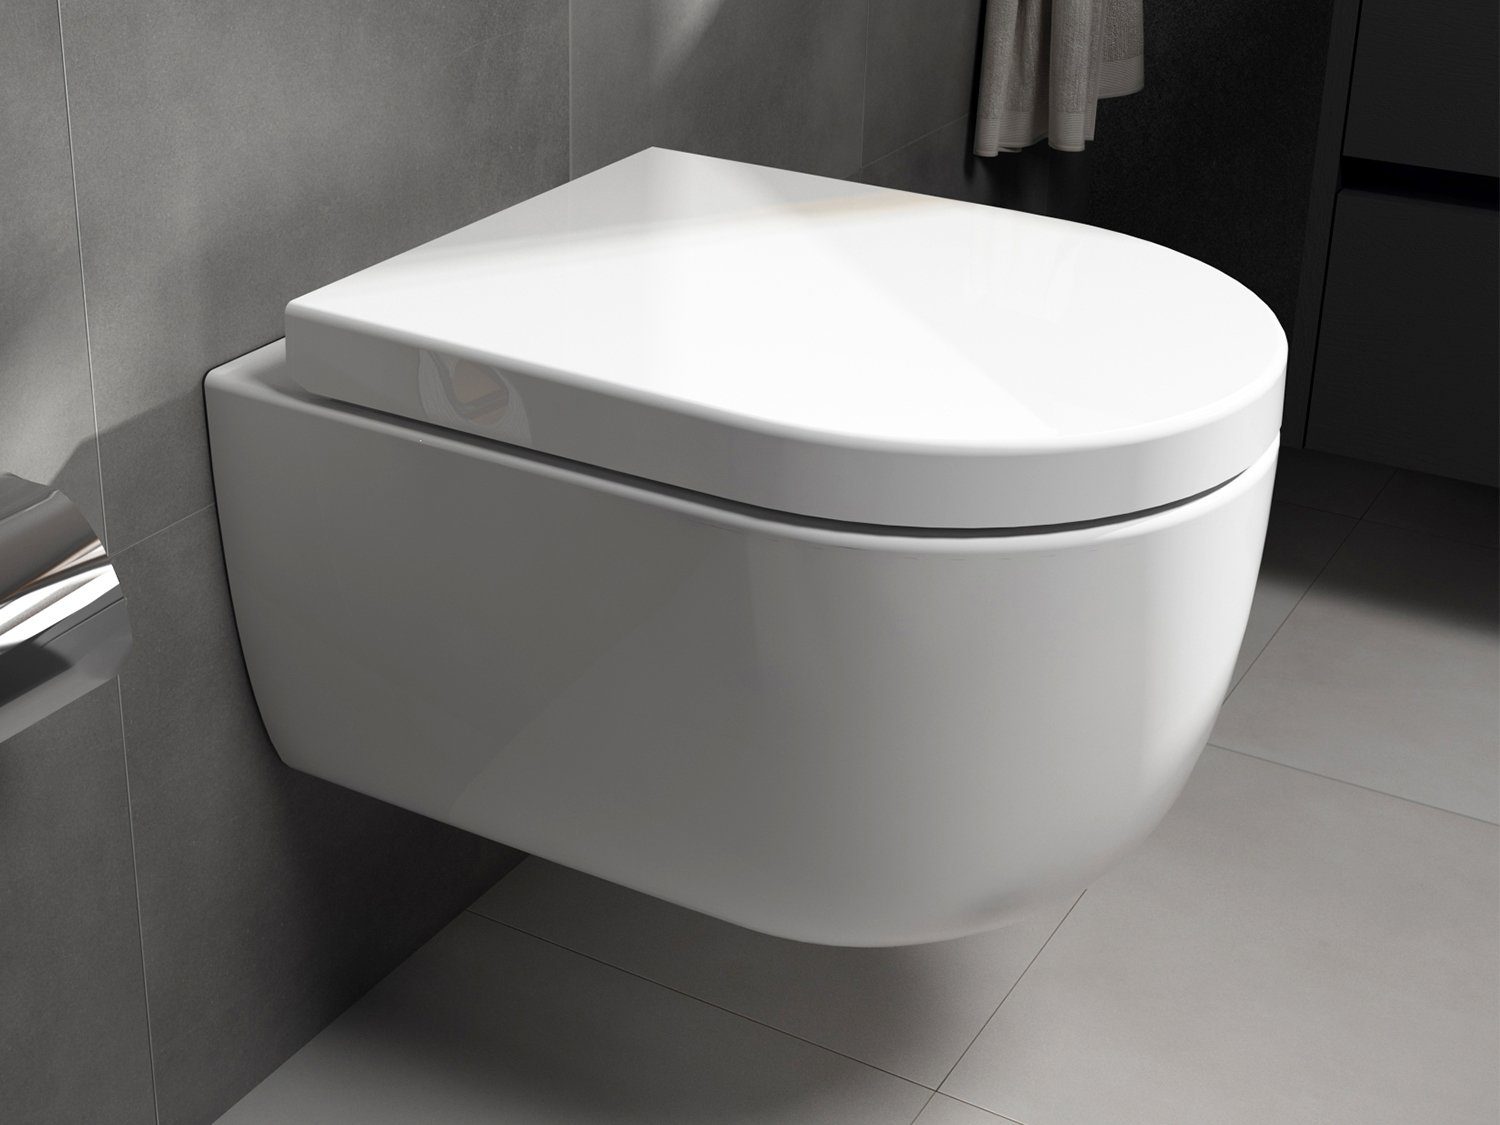 Aqua Bagno Tiefspül-WC Aqua Bagno ALPHA spülrandloses Design Hänge WC Spülrandlos Toilette